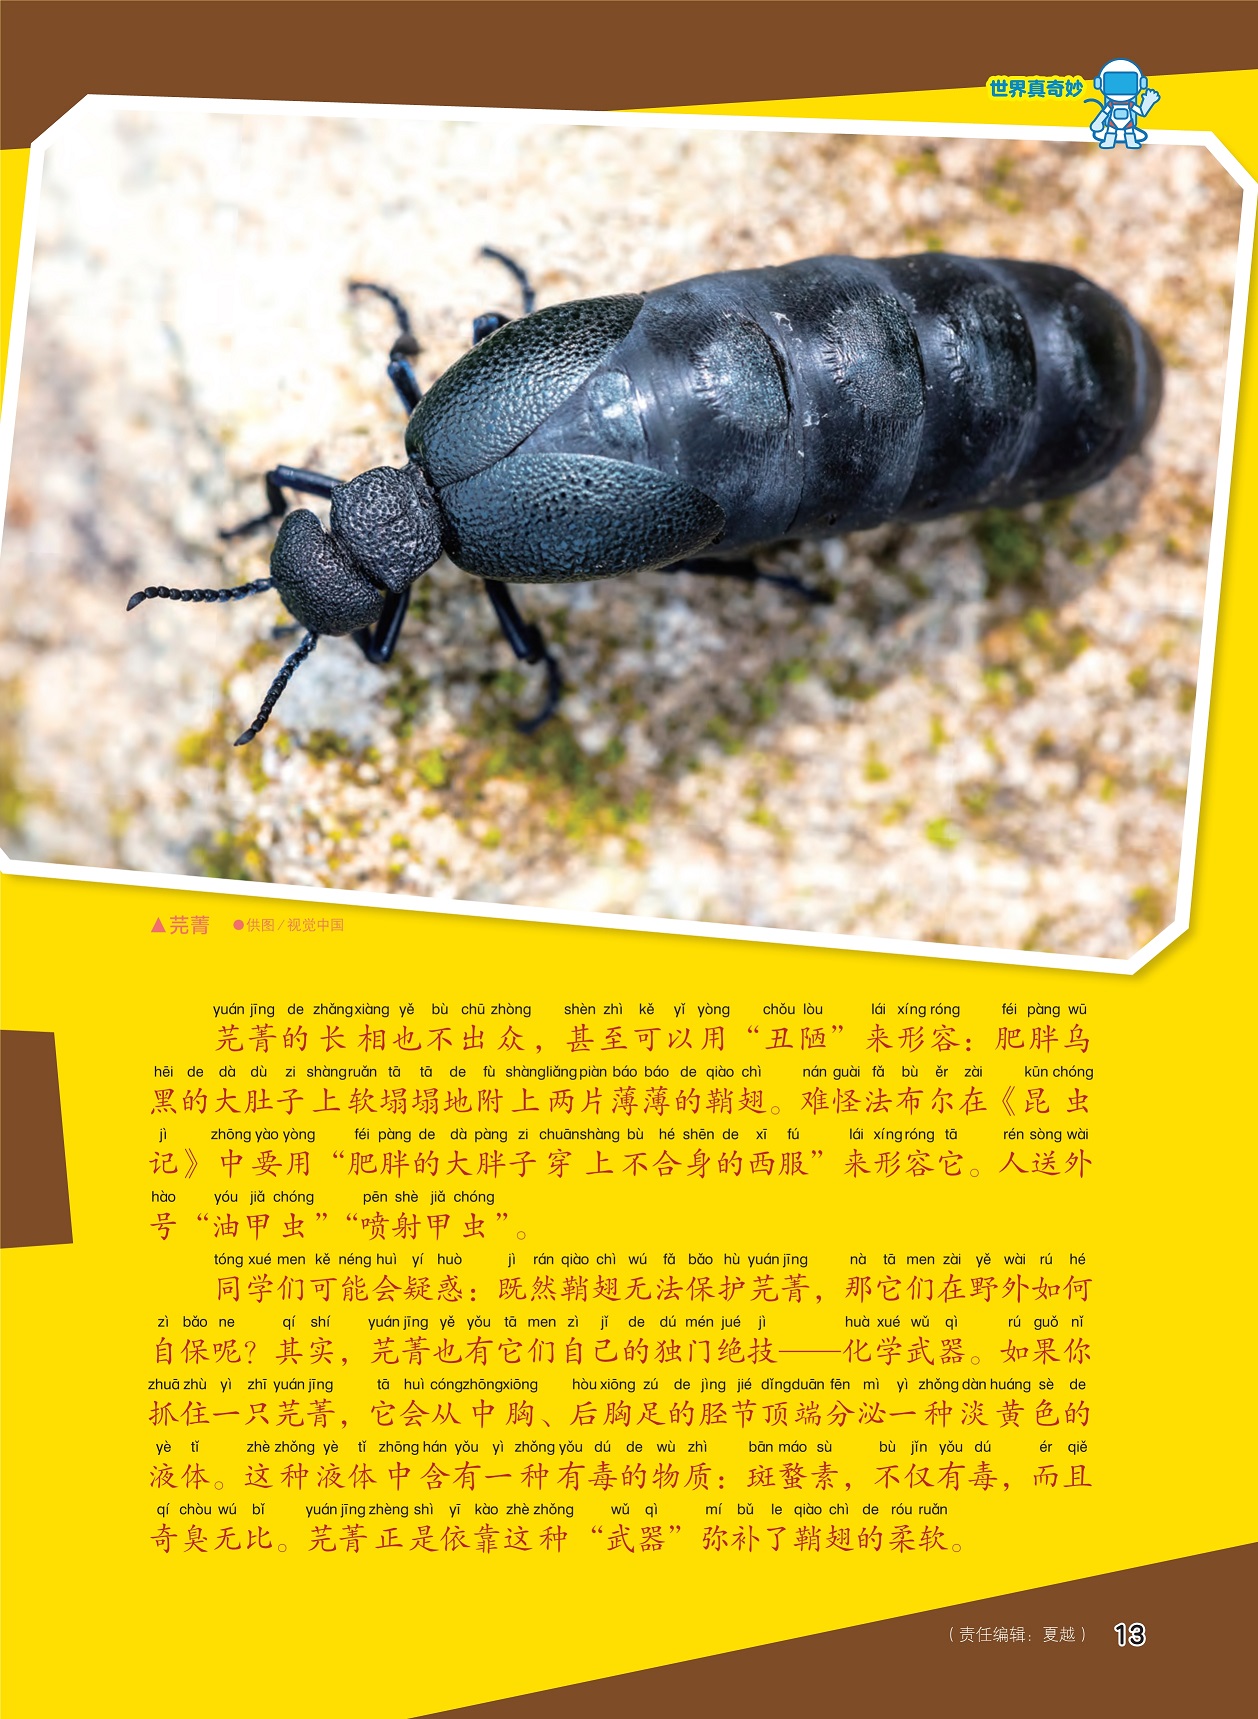 机甲战士:神奇的鞘翅目甲虫